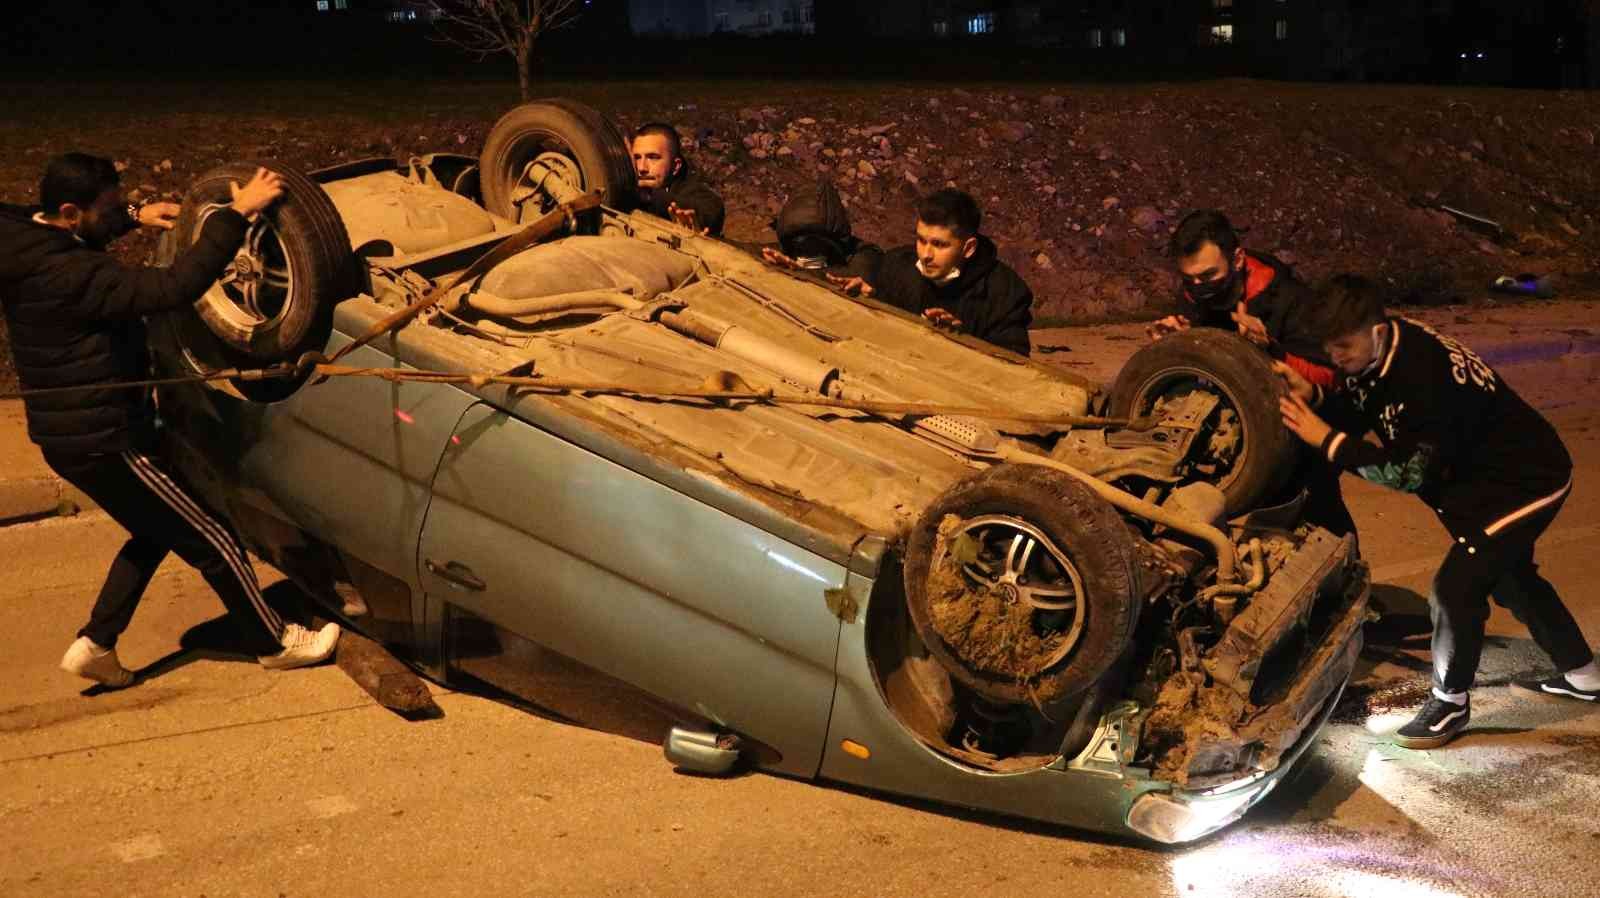 Edirne’de kaza yapan otomobil yolun ortasında ters döndü: 2 yaralı #edirne